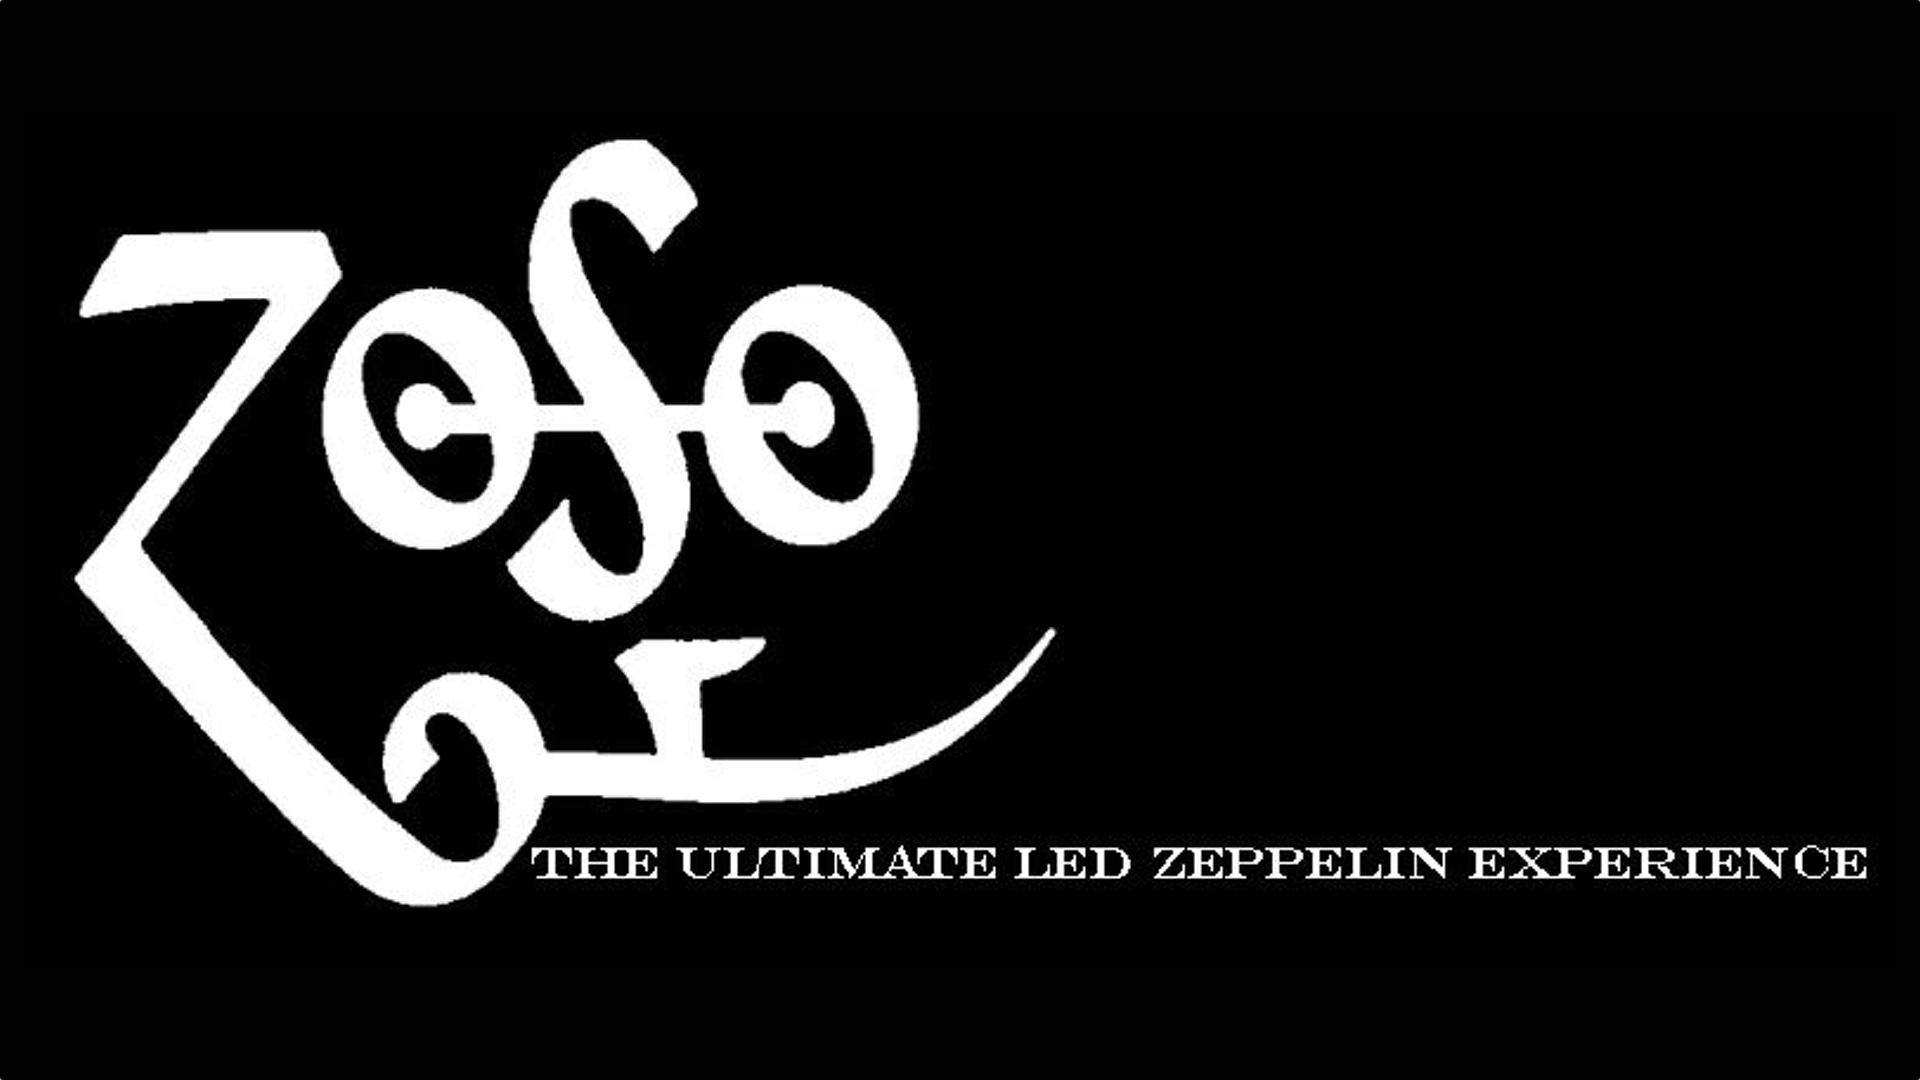 Zoso Logo - Zoso